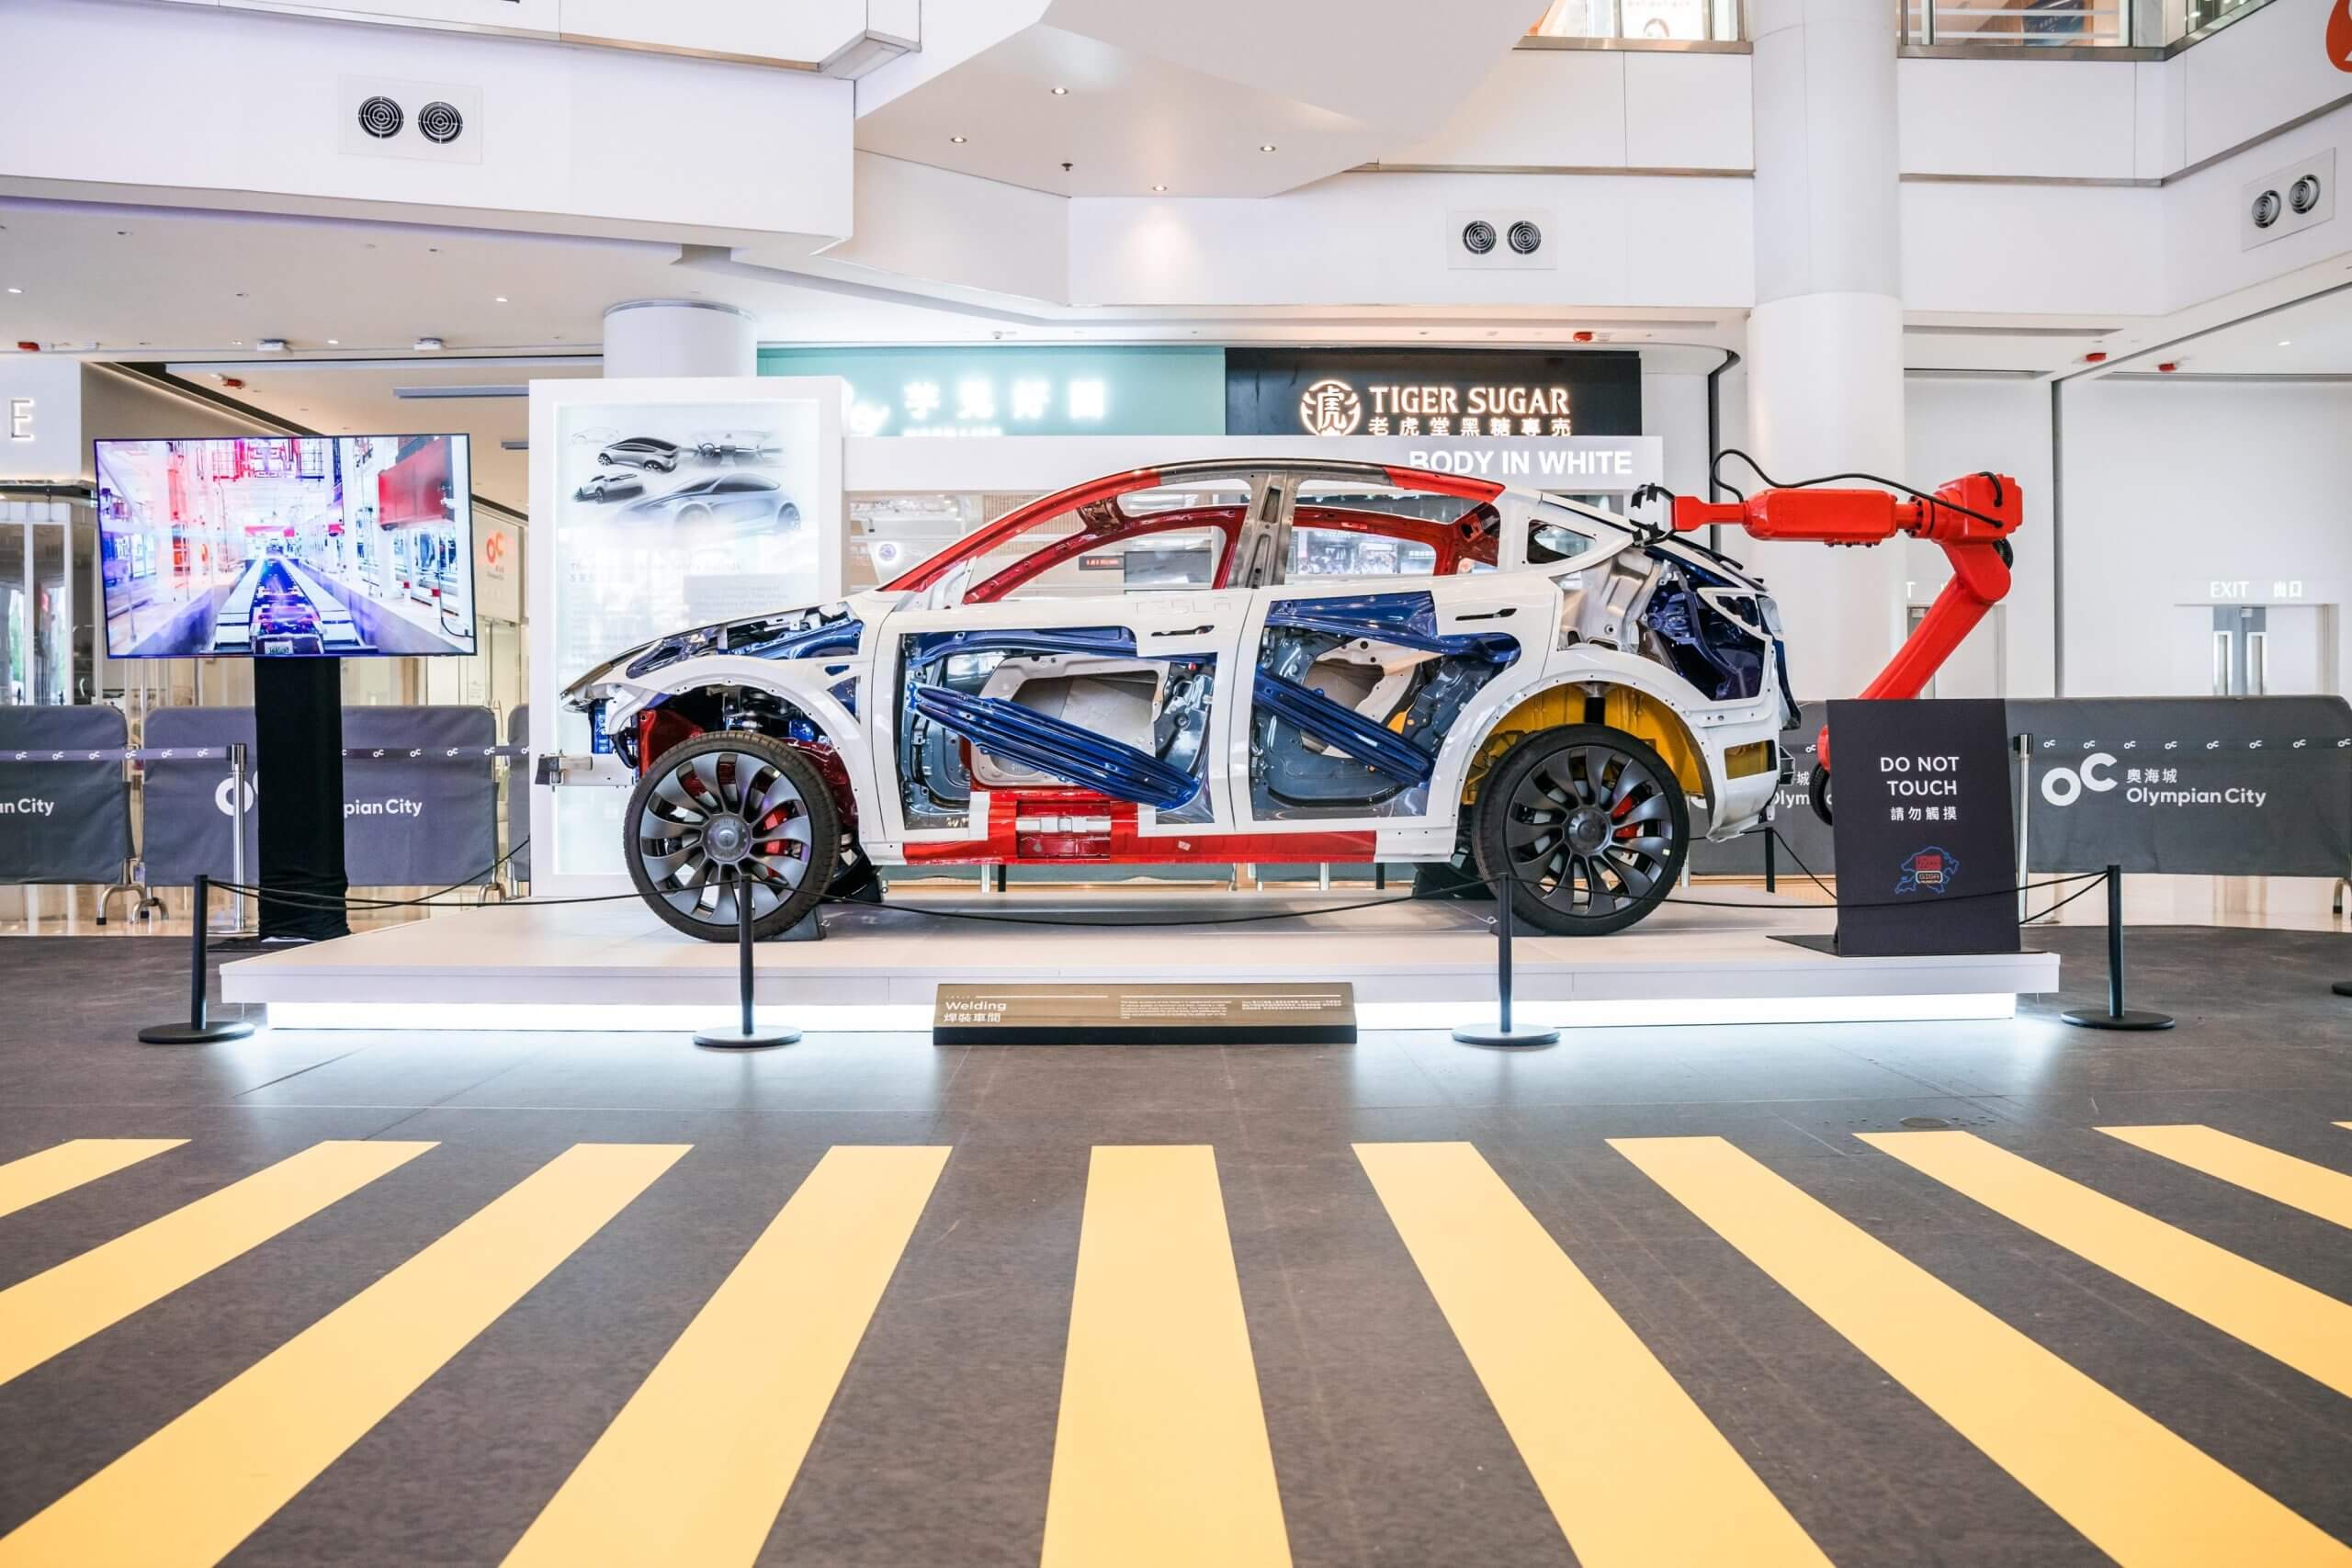 टेस्ला मॉडल 3 हाईलैंड आरएचडी हांगकांग में प्रदर्शित किया गया